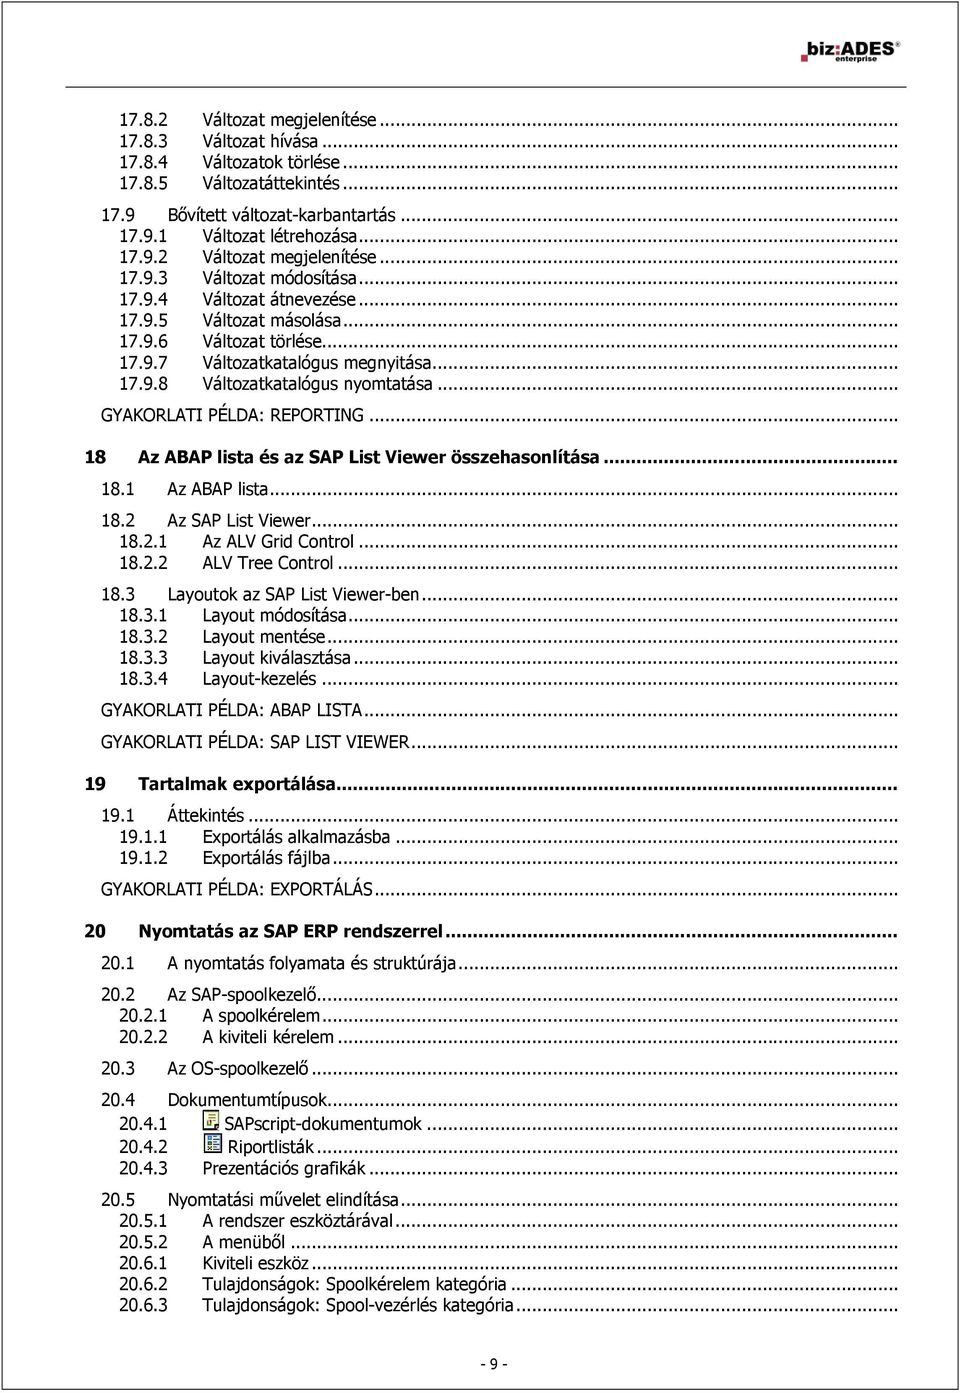 .. 18 Az ABAP lista és az SAP List Viewer összehasonlítása... 18.1 Az ABAP lista... 18.2 Az SAP List Viewer... 18.2.1 Az ALV Grid Control... 18.2.2 ALV Tree Control... 18.3 Layoutok az SAP List Viewer-ben.